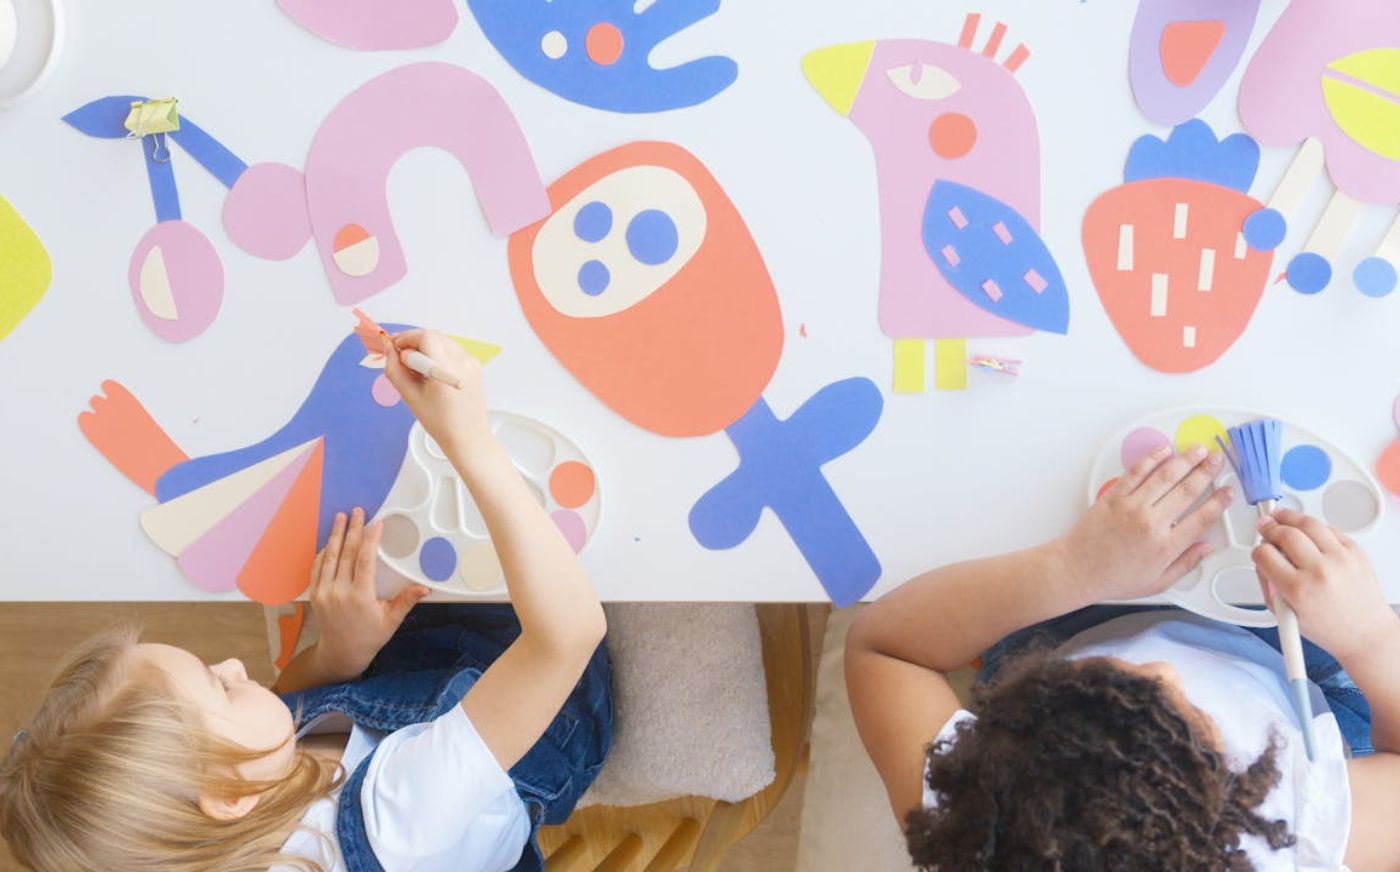 Nurturing children's creativity through art